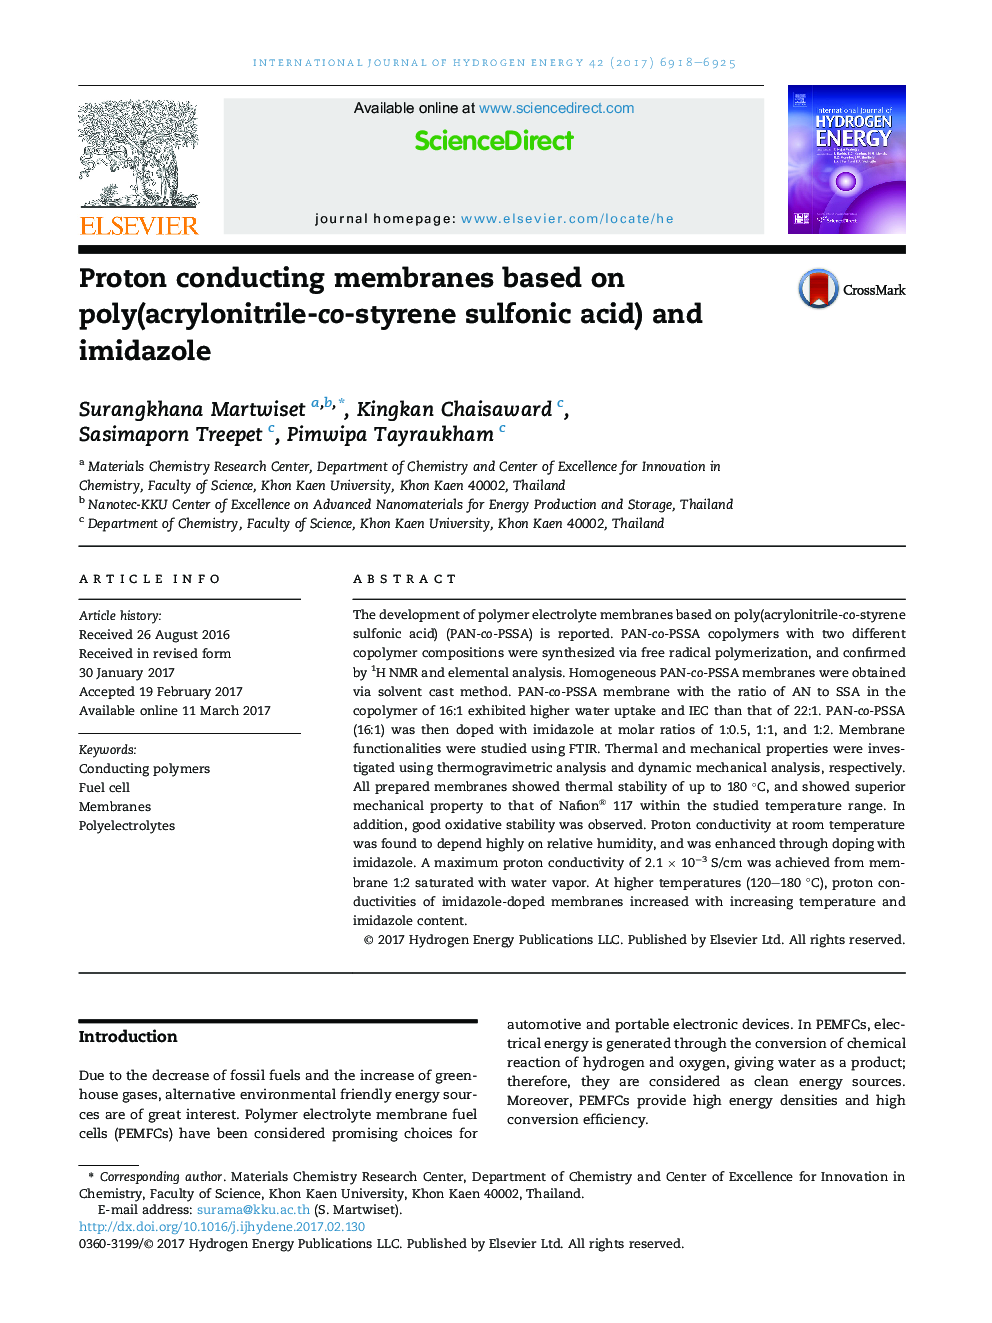 Proton conducting membranes based on poly(acrylonitrile-co-styrene sulfonic acid) and imidazole